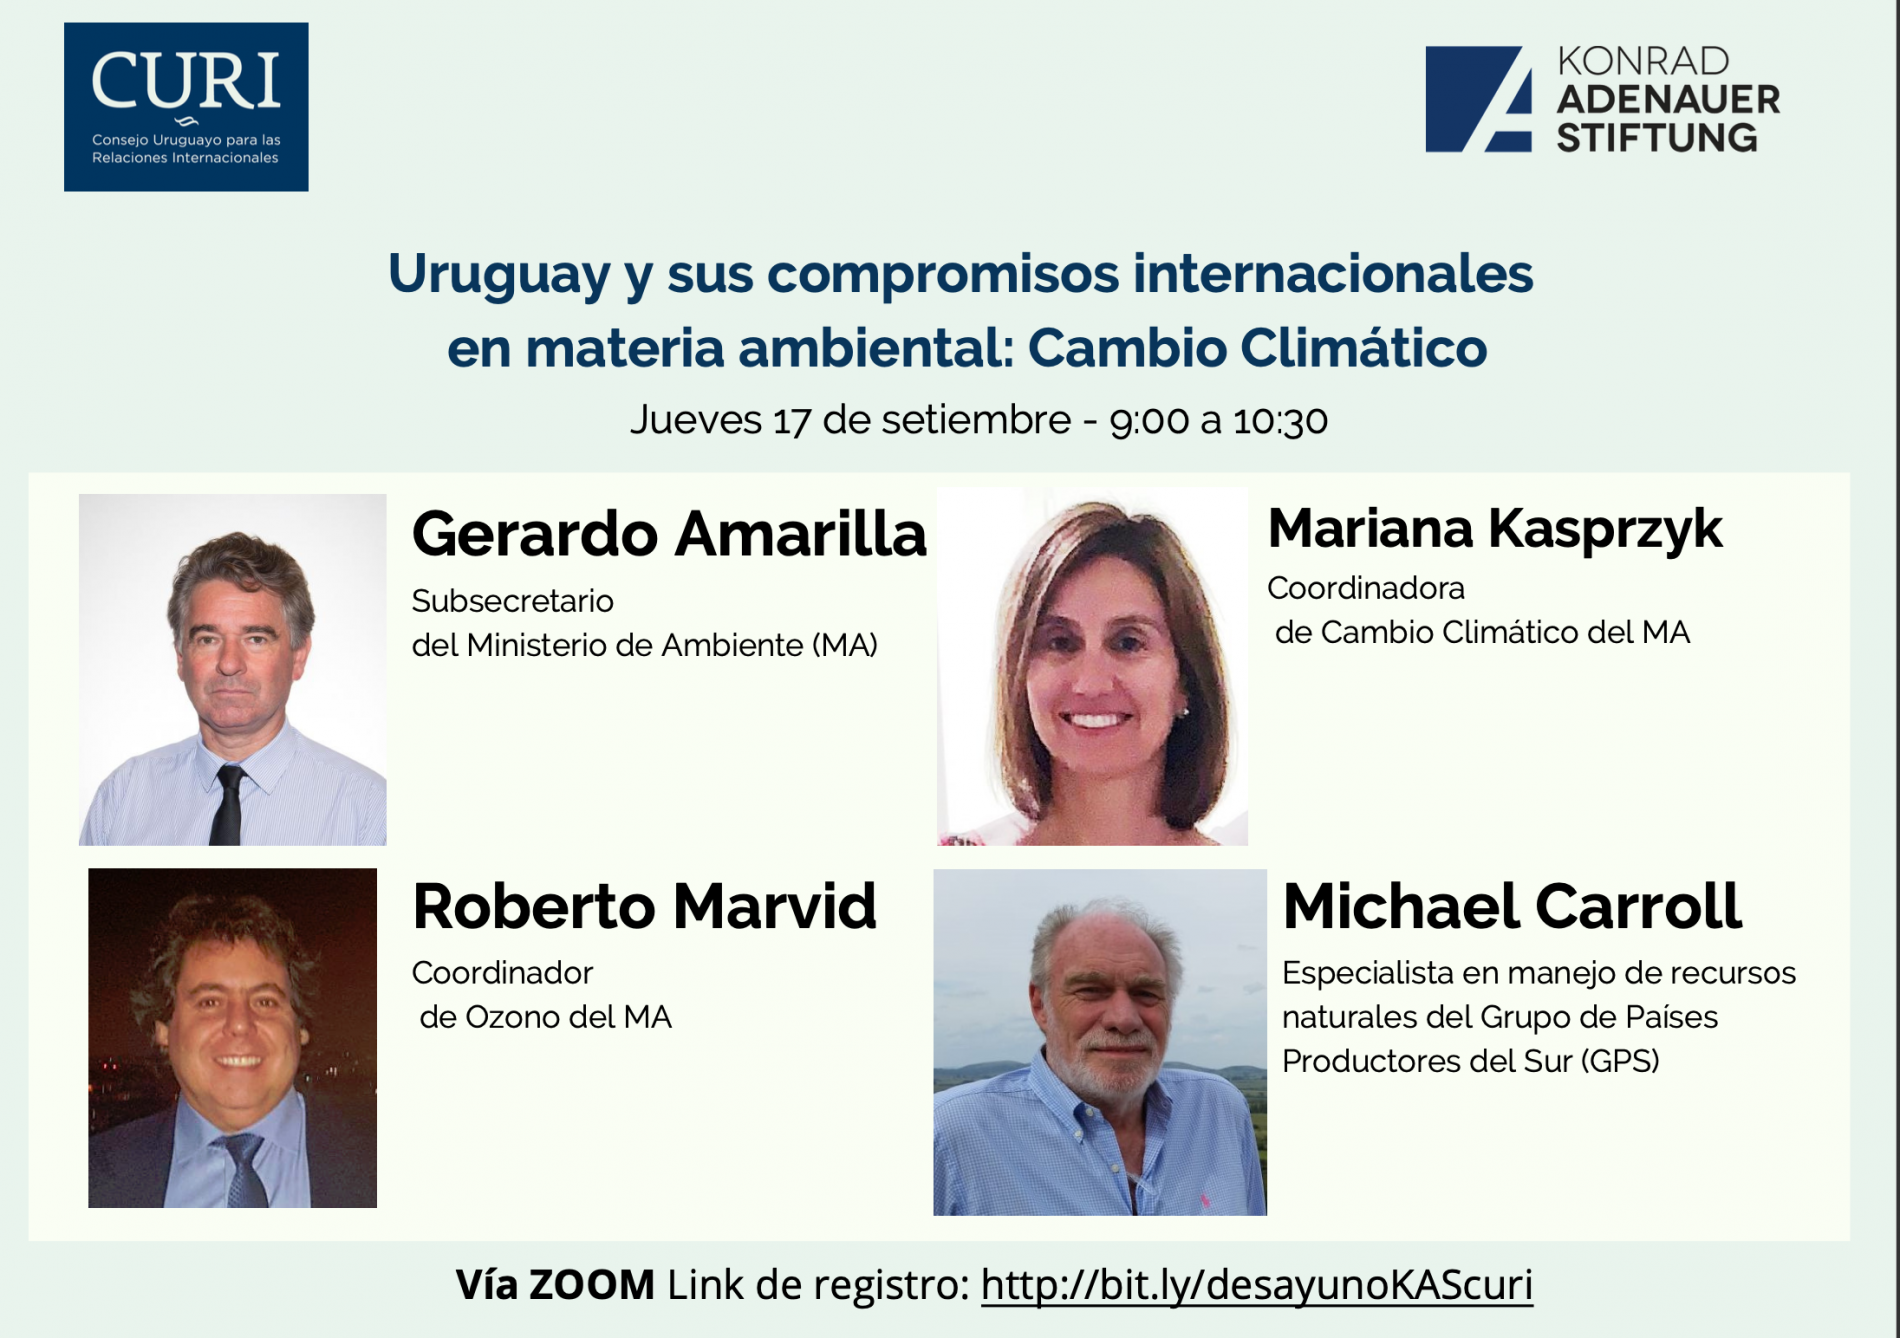 Evento: “Uruguay y sus compromisos internacionales en materia ambiental: Cambio Climático”.